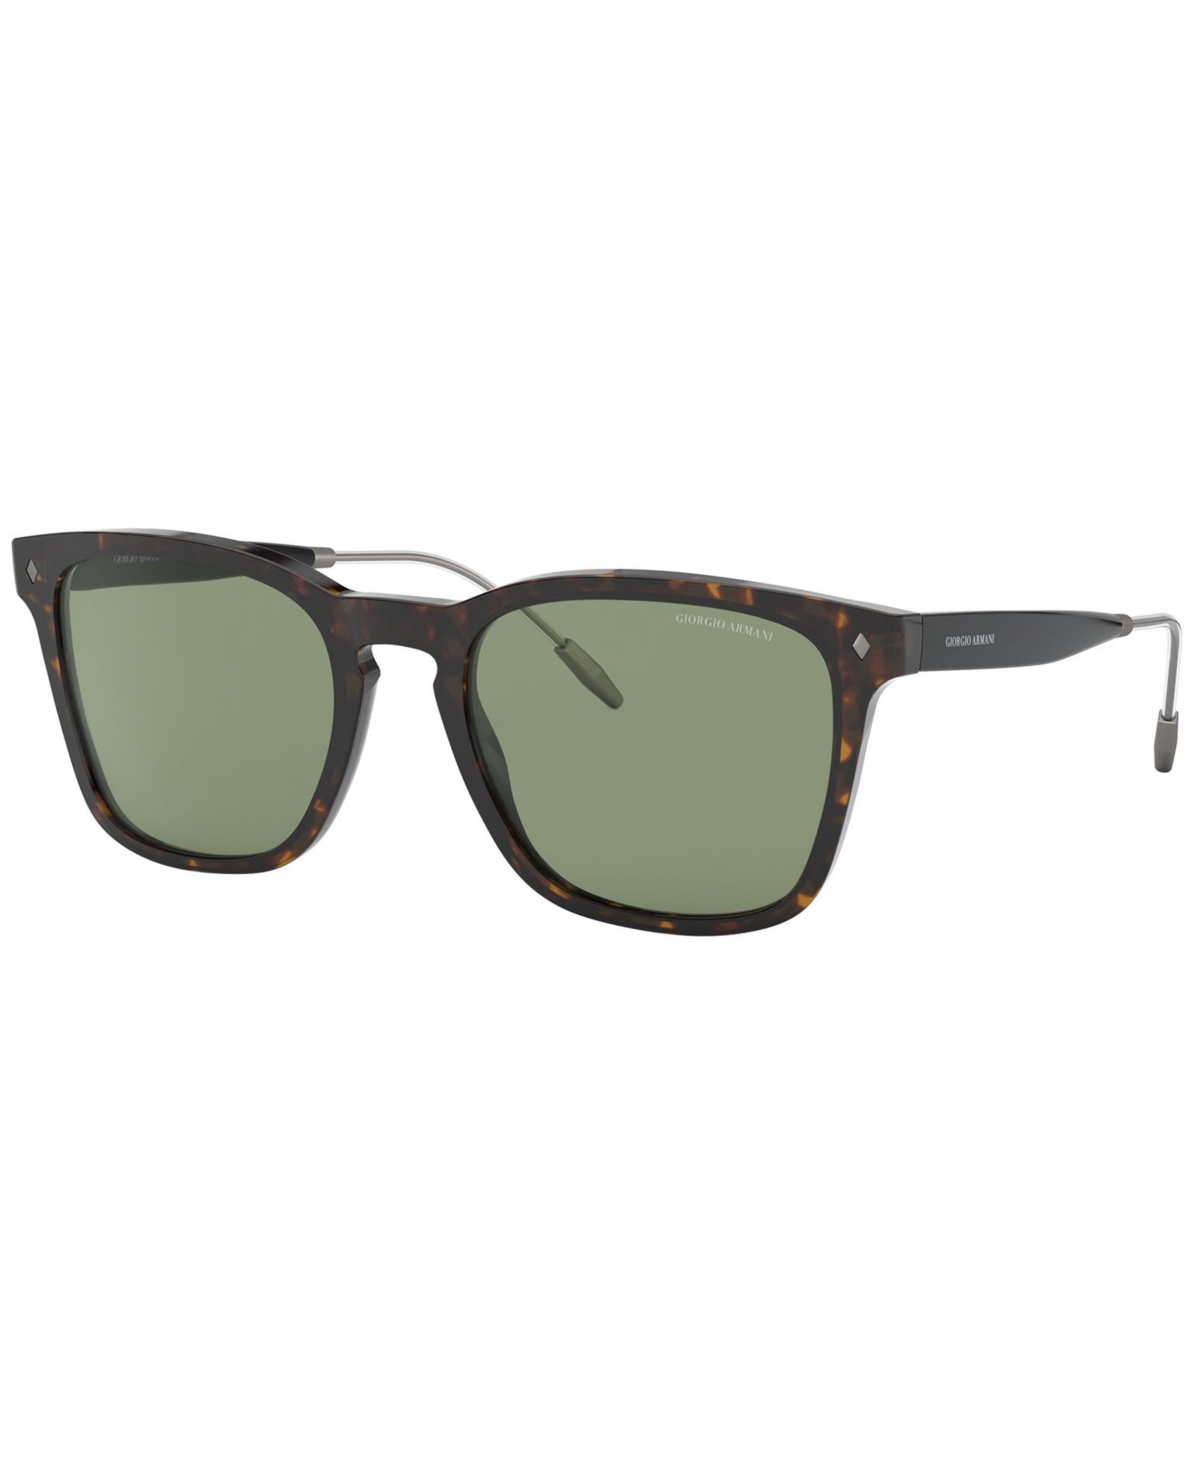 Giorgio Armani Sunglasses, Ar8120 54 In Havana,green